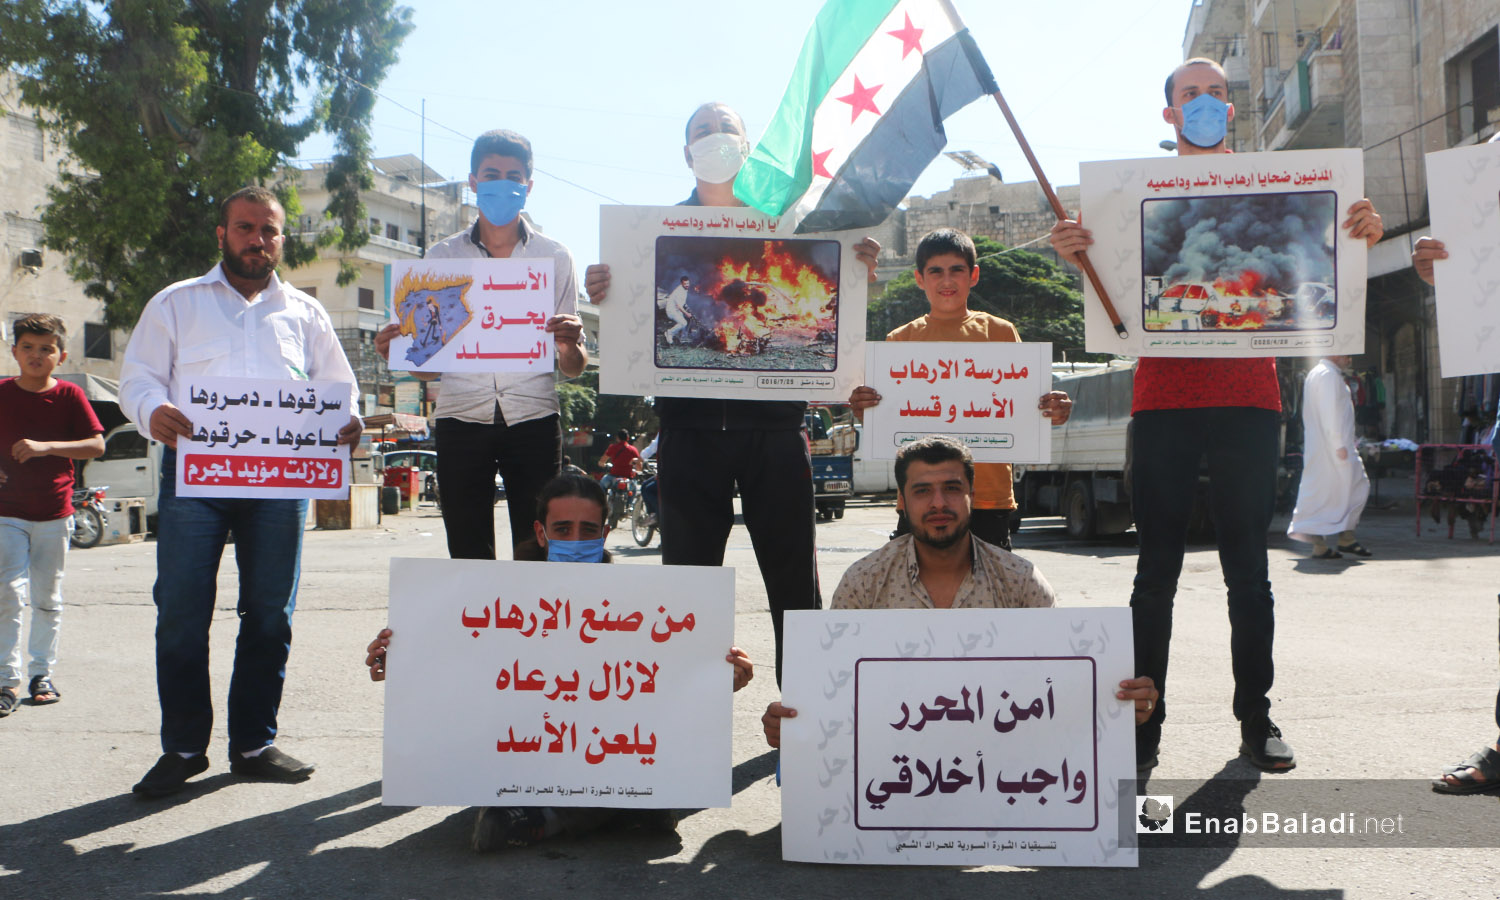 شارك الناشطون في الوقفة الاحتجاجية بمدينة إدلب رافعين لافتات تدين الانتهاكات بحق المدنيين في سوريا - 9 تشرين الأول 2020 (عنب بلدي/ أنس الخولي)